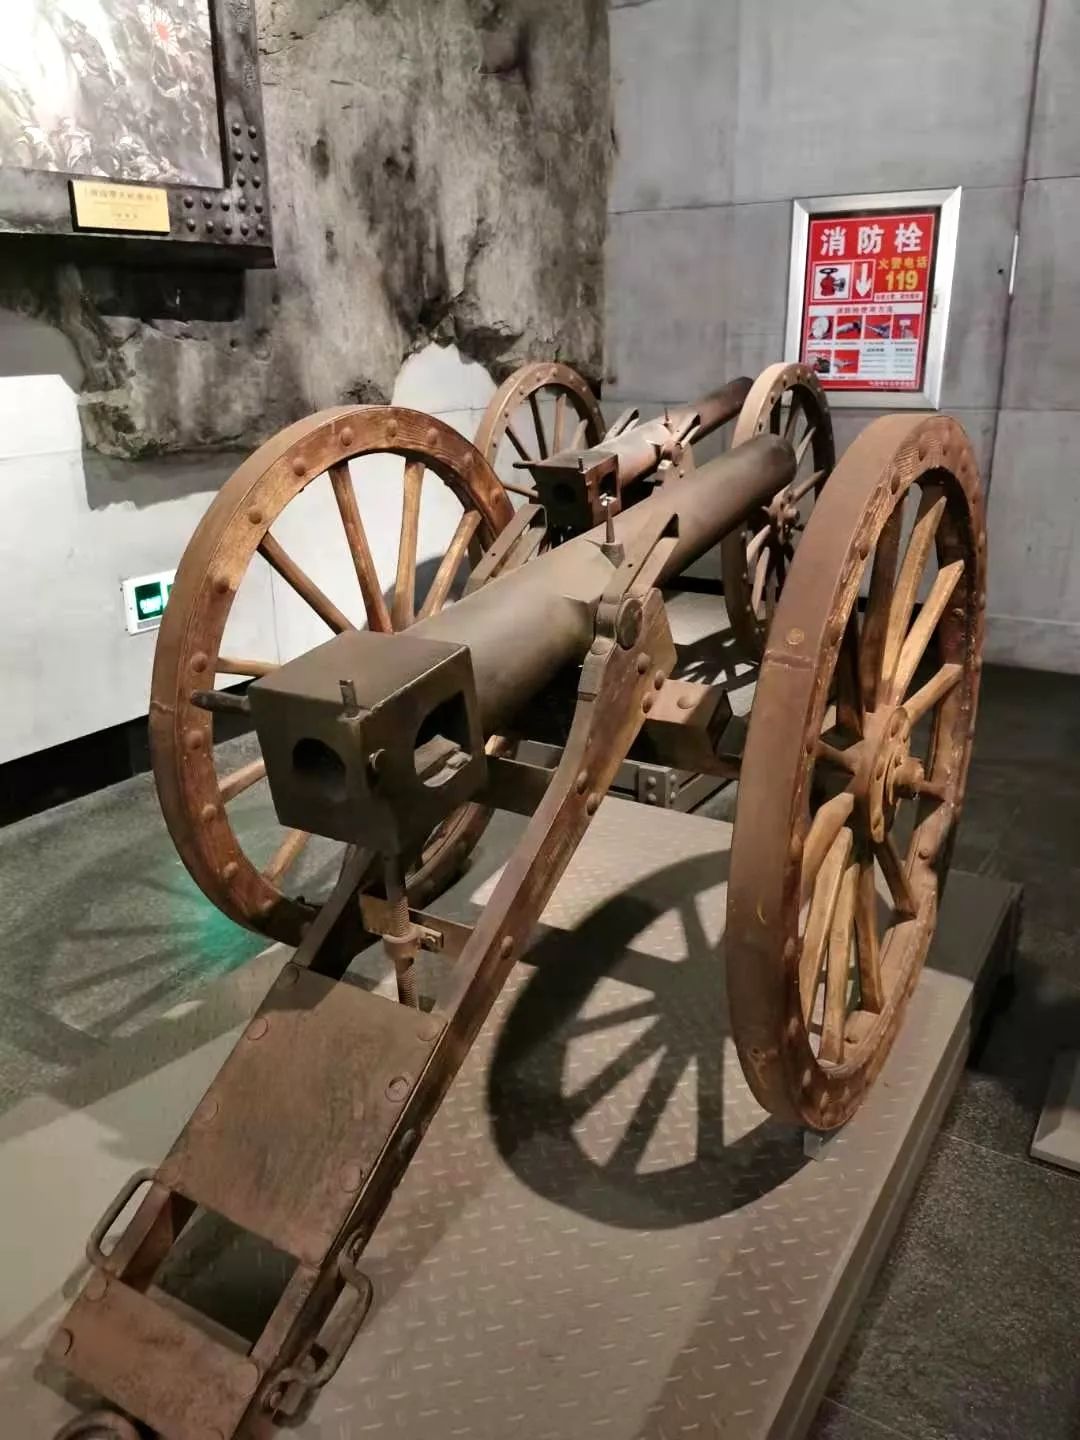 这门炮是当时中国陆军装备的克虏伯75mm后膛行营炮,由德国生产,炮长